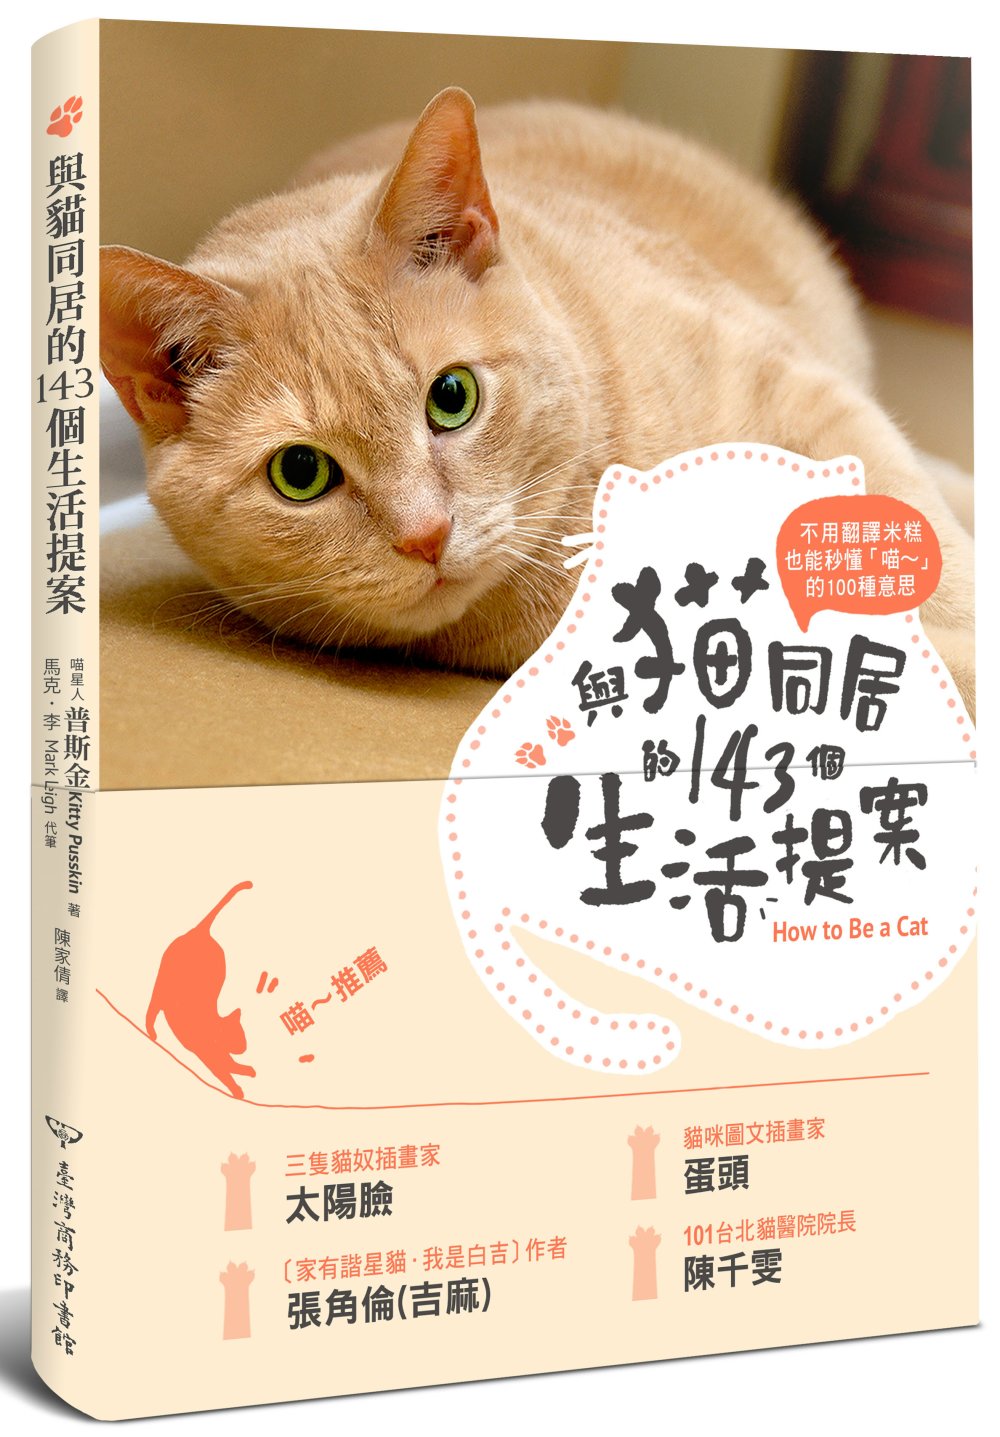 與貓同居的143個生活提案：反應．行動．好惡．健康，第一本從貓咪角度解析喵喵身心的完全手冊